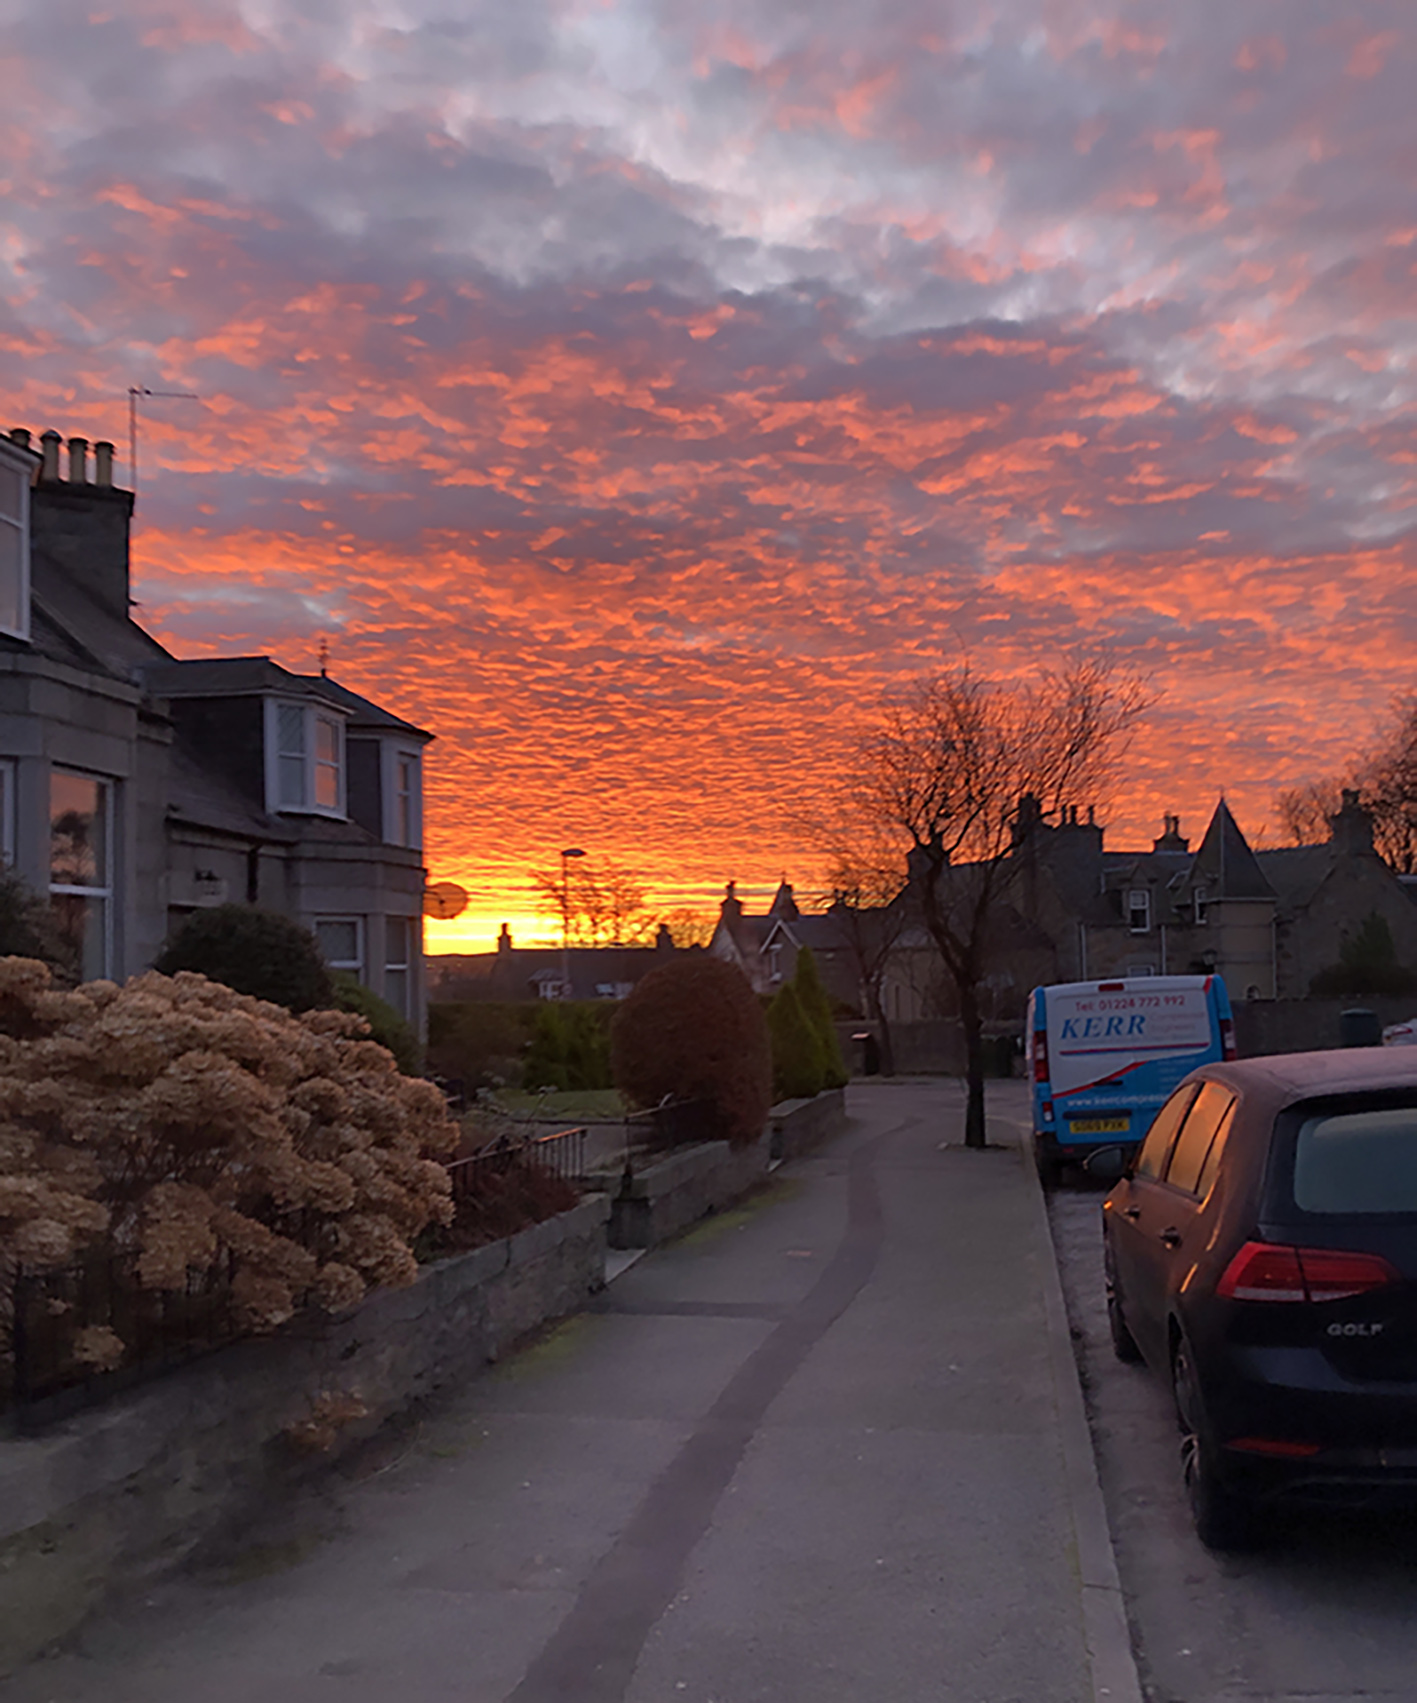 Sunset looking down Zoë's street in Aberdeen